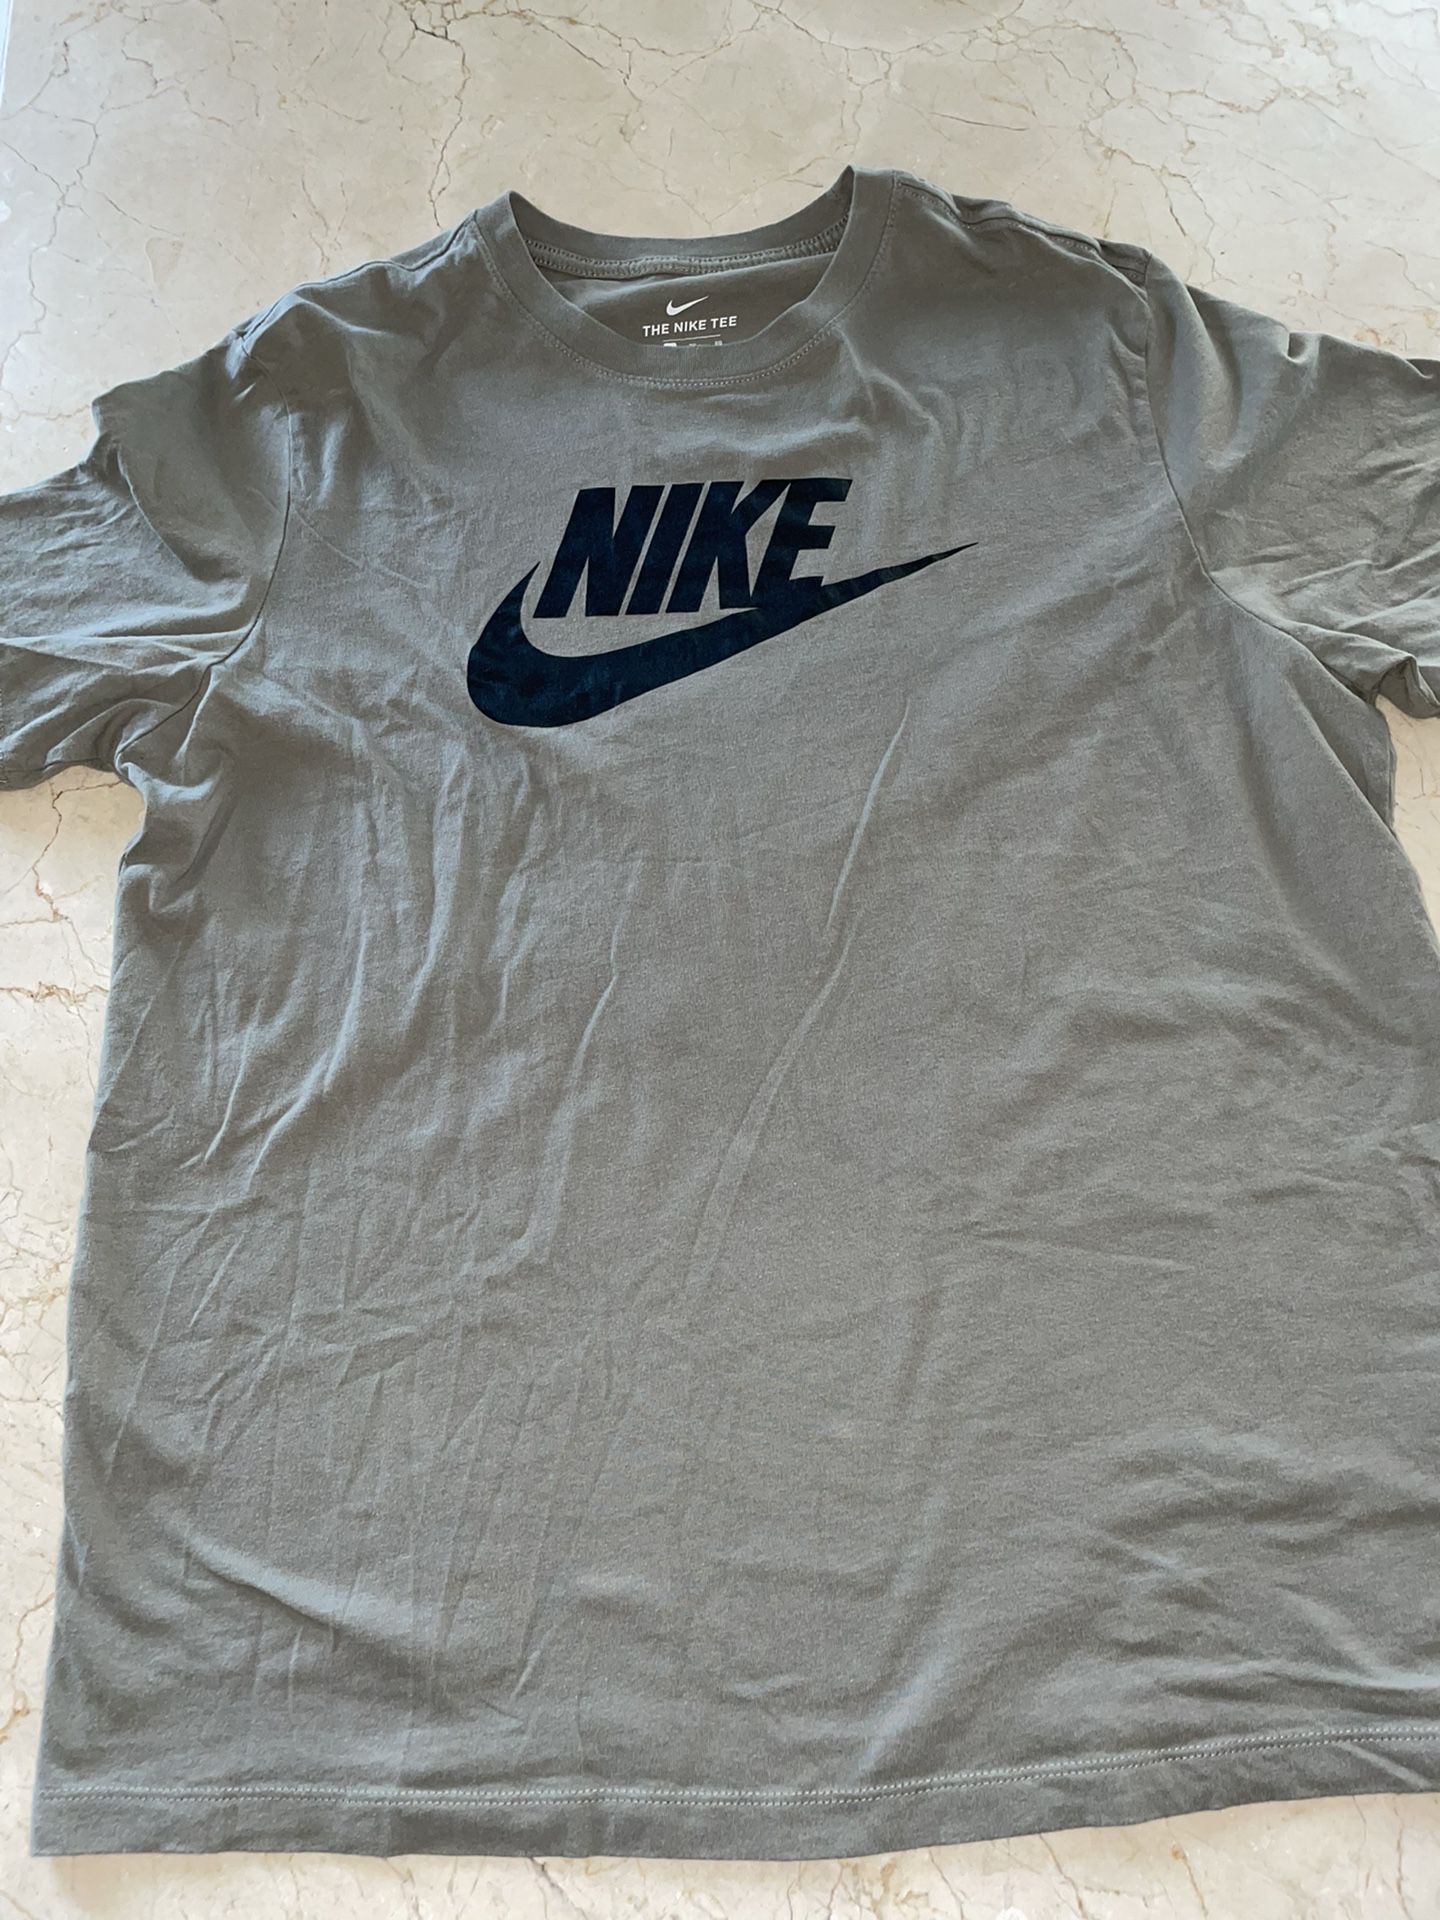 Mens Nike Shirt